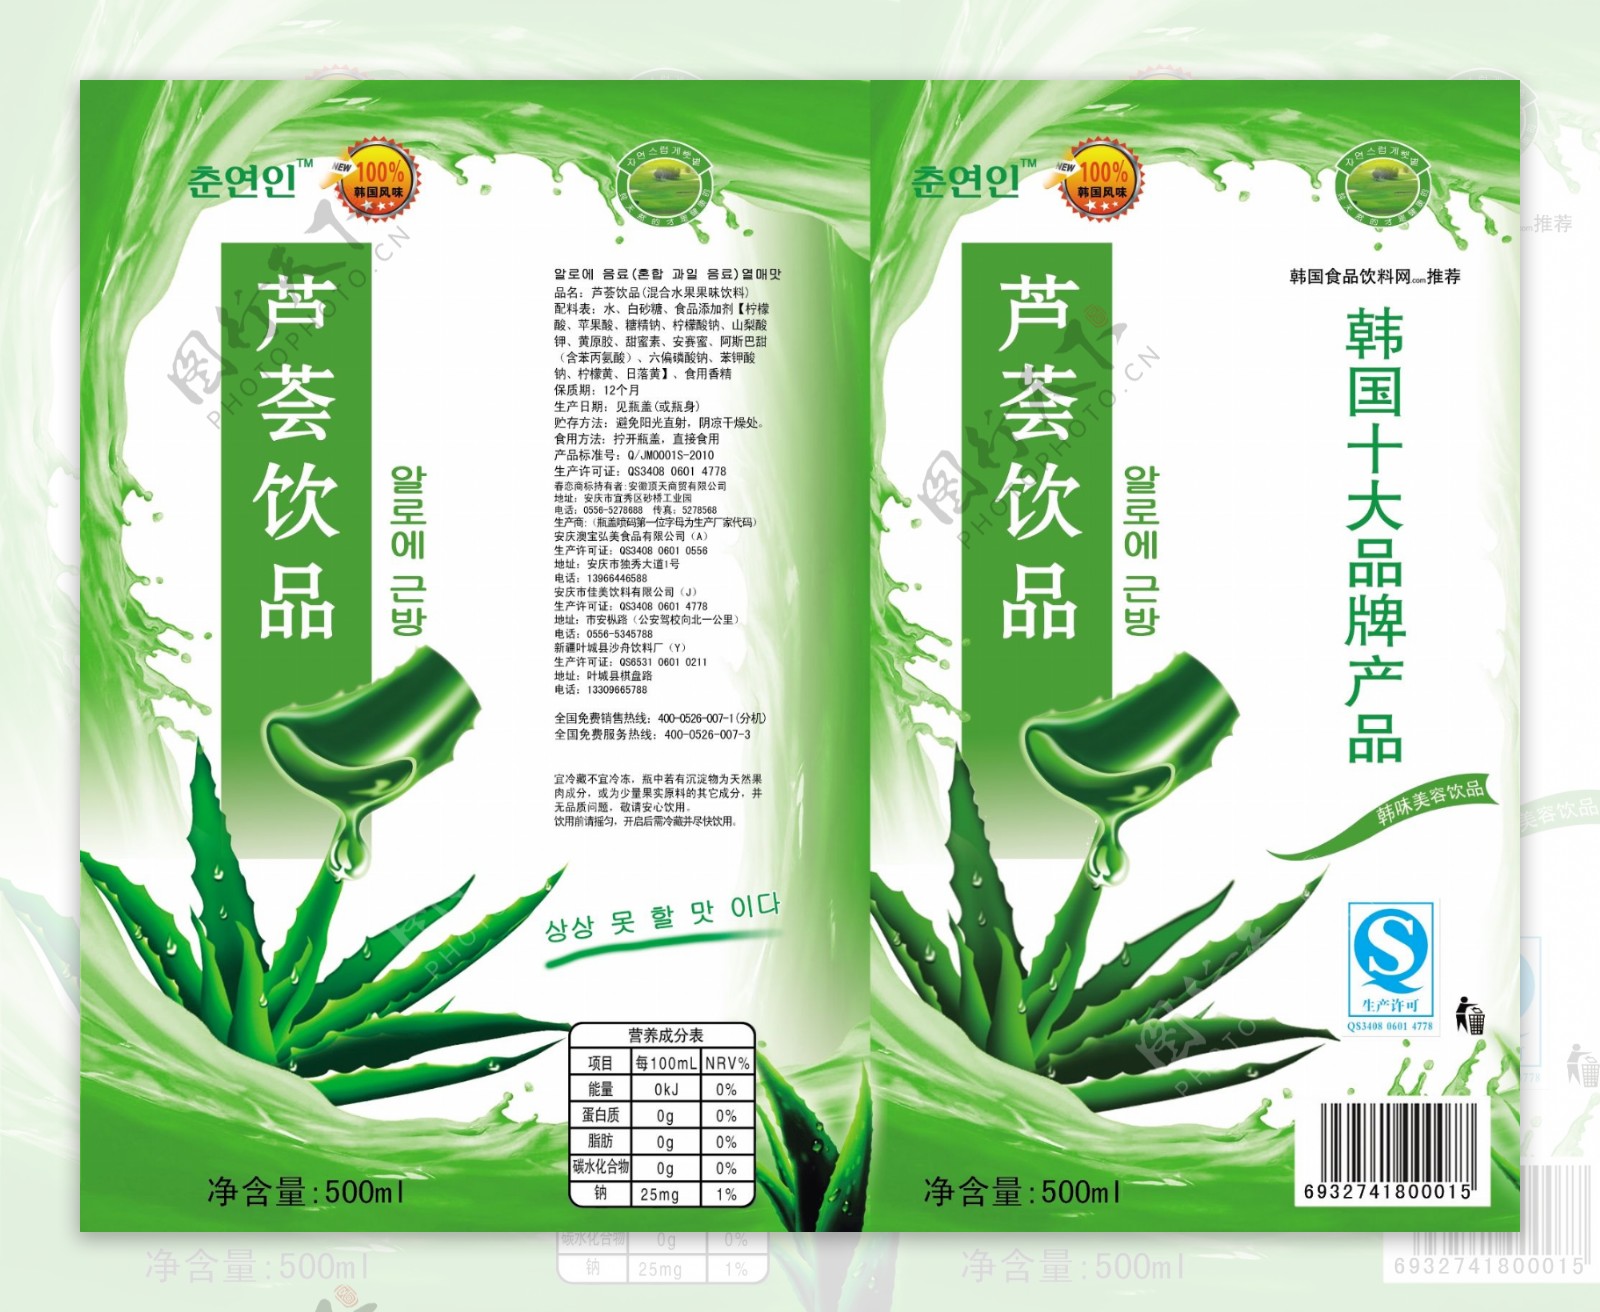 芦荟汁饮料瓶标图片